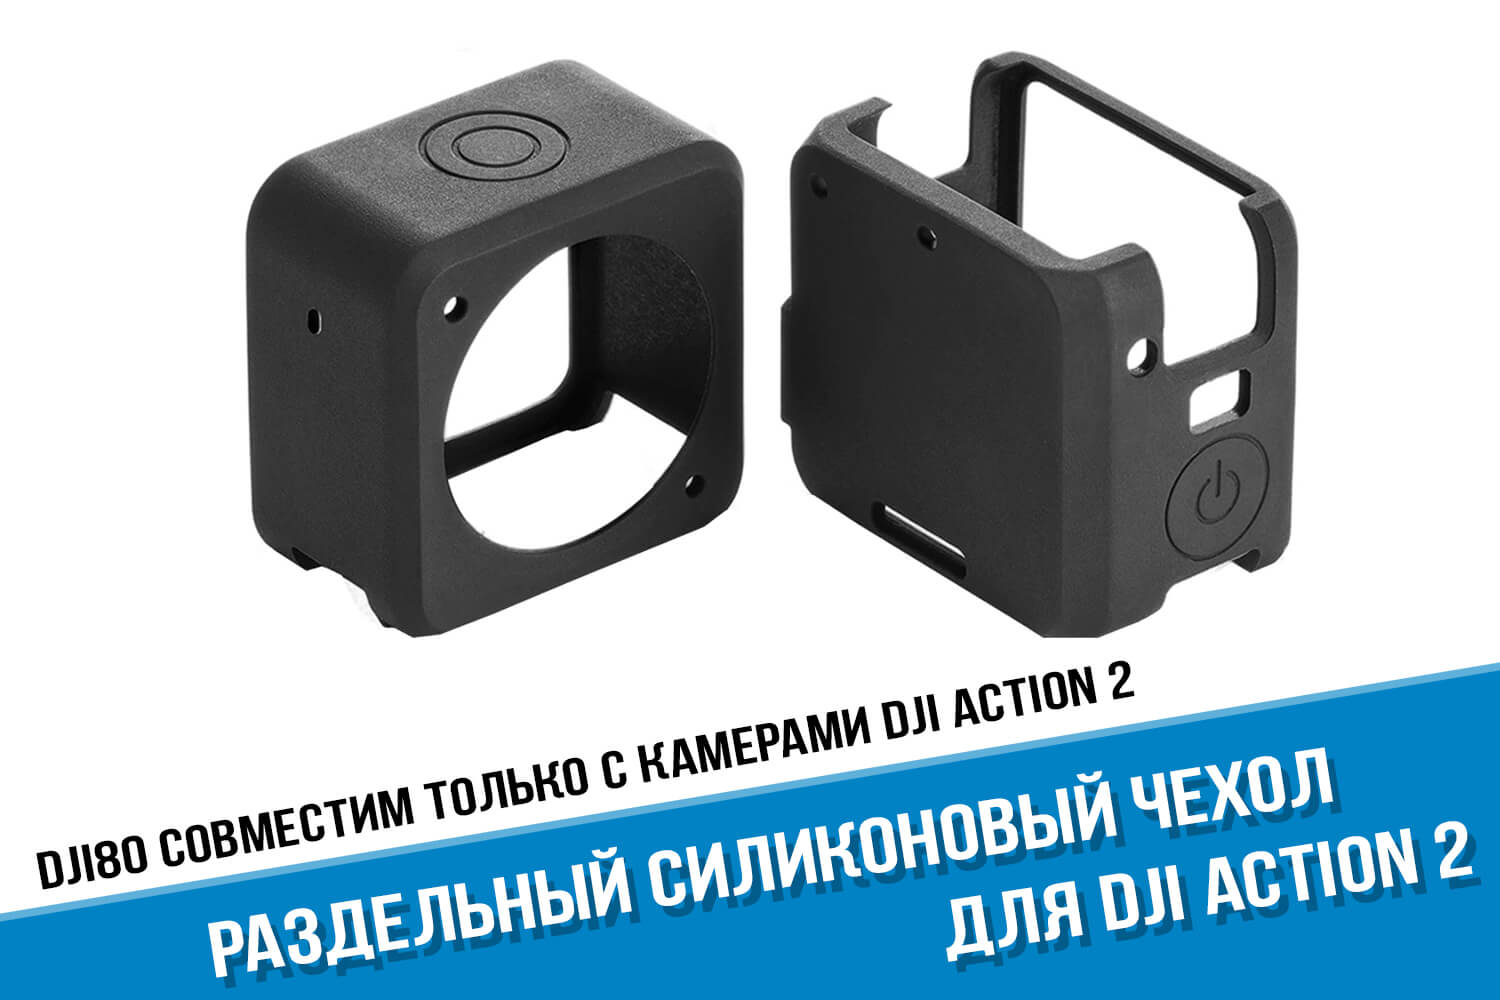 Раздельный силиконовый чехол для экшн-камеры DJI Action 2